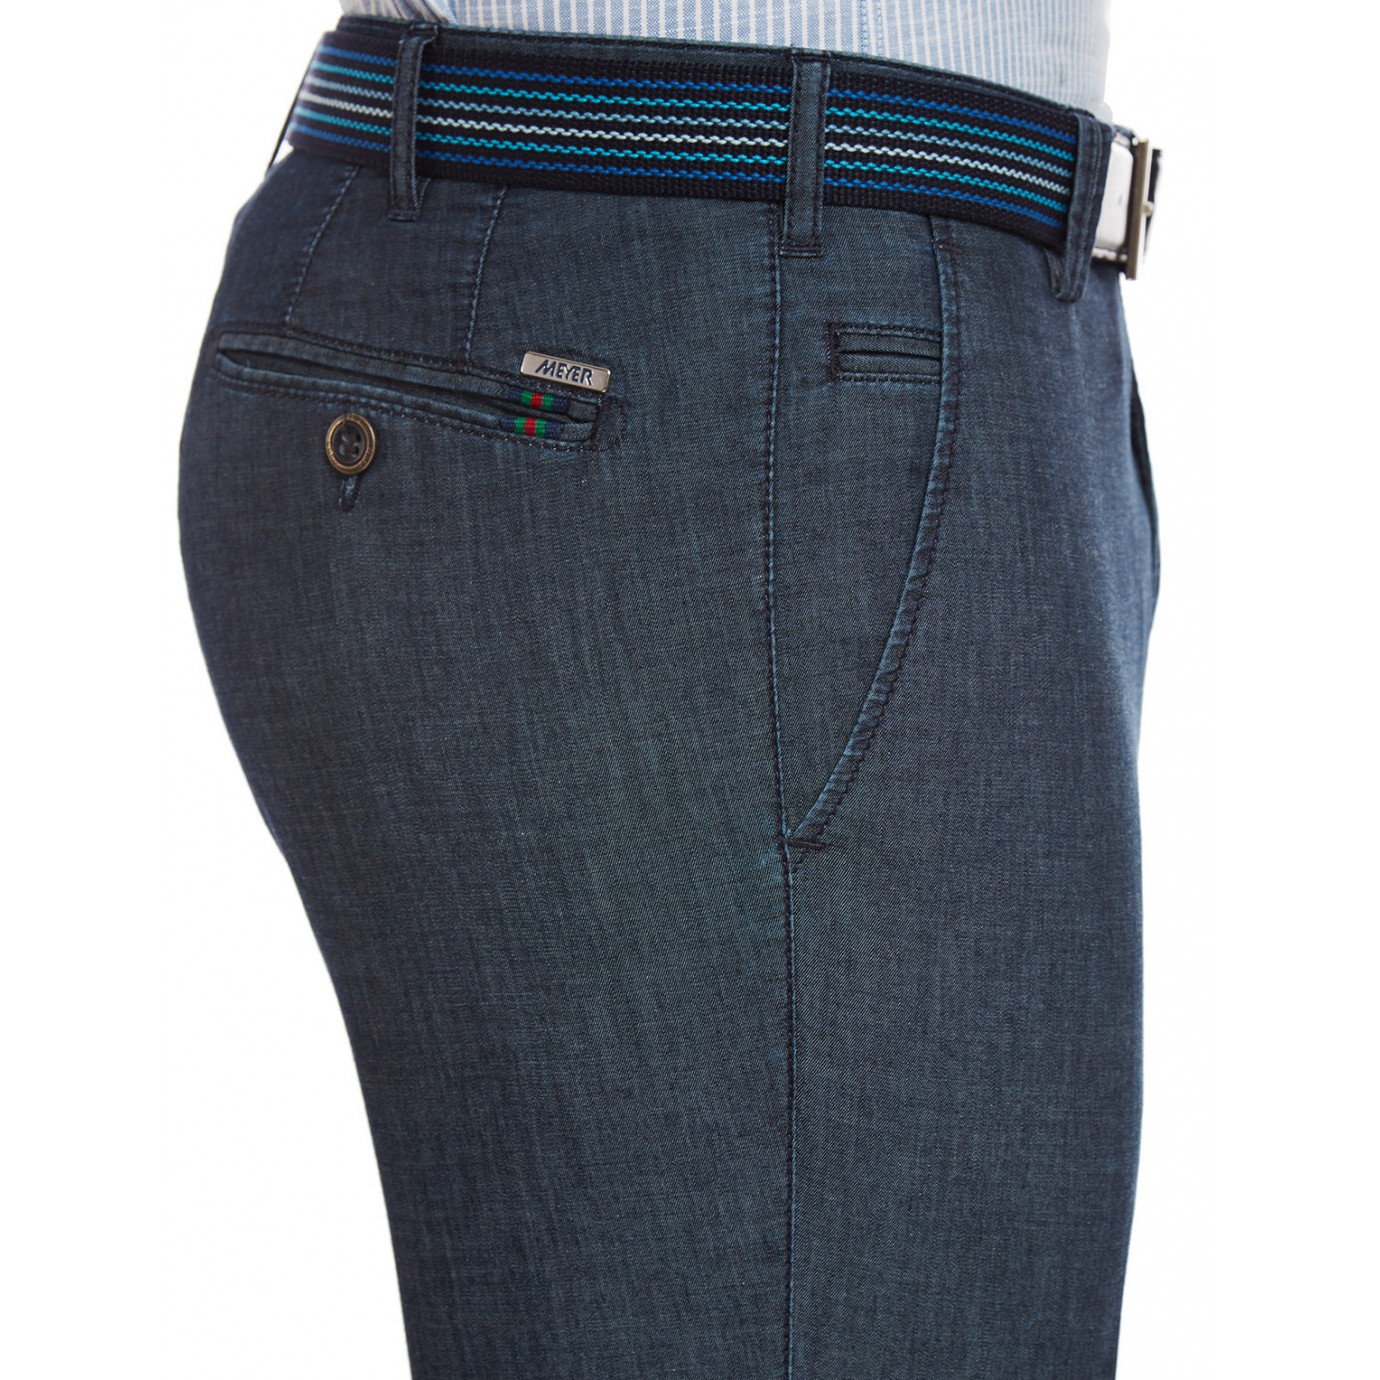 Брюки мужские Meyer Bonn 5-680/19 из легкой летней джинсовой ткани купить вМоскве в интернет-магазине SHOP4BIG - цена, фото, описание